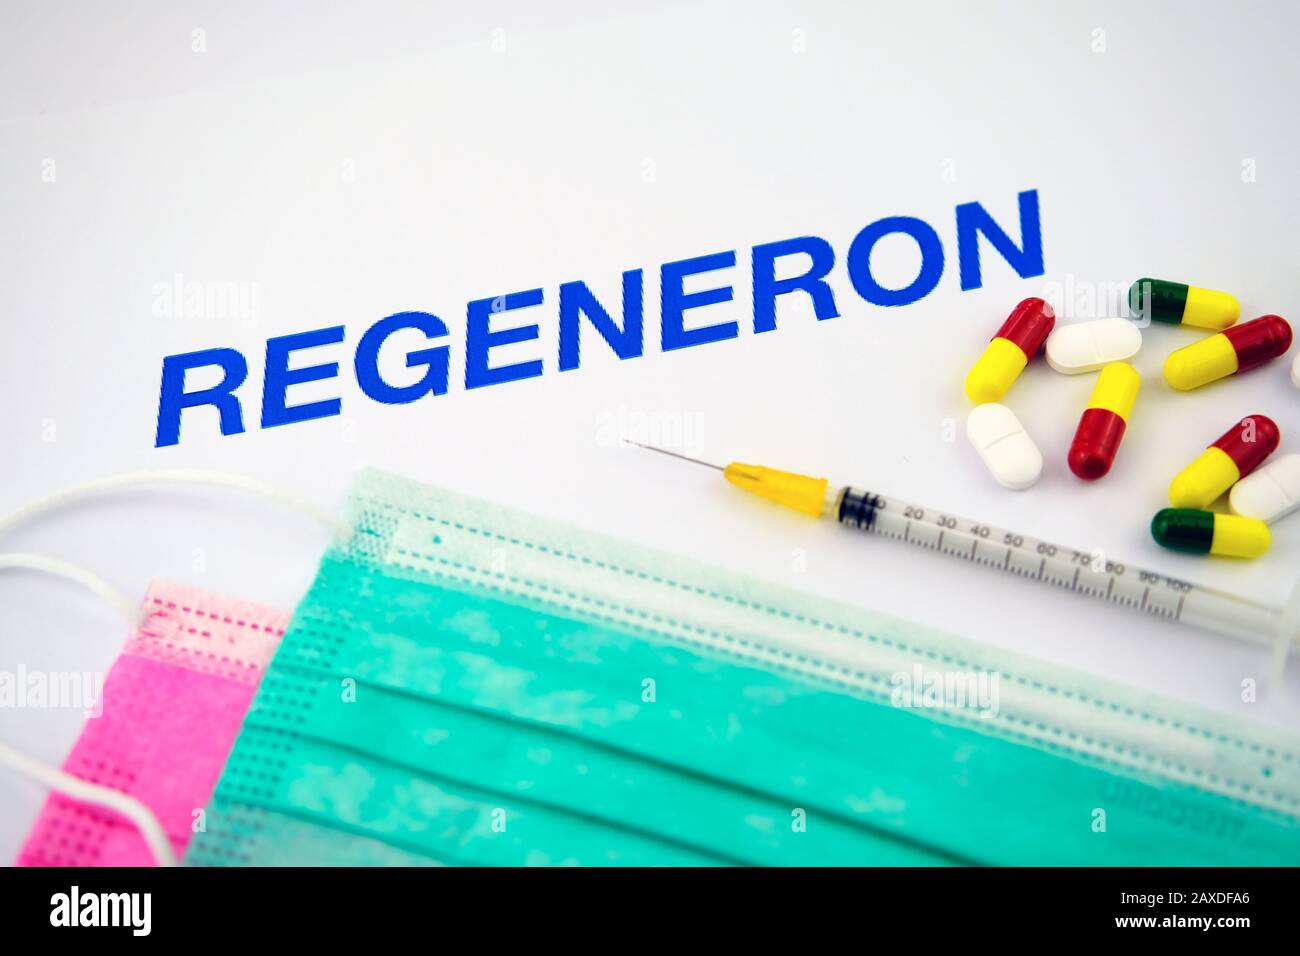 Regeneron è un'azienda leader nel settore della biotecnologia che utilizza il potere della scienza per portare nuovi farmaci ai pazienti bisognosi. Concept foto Foto Stock